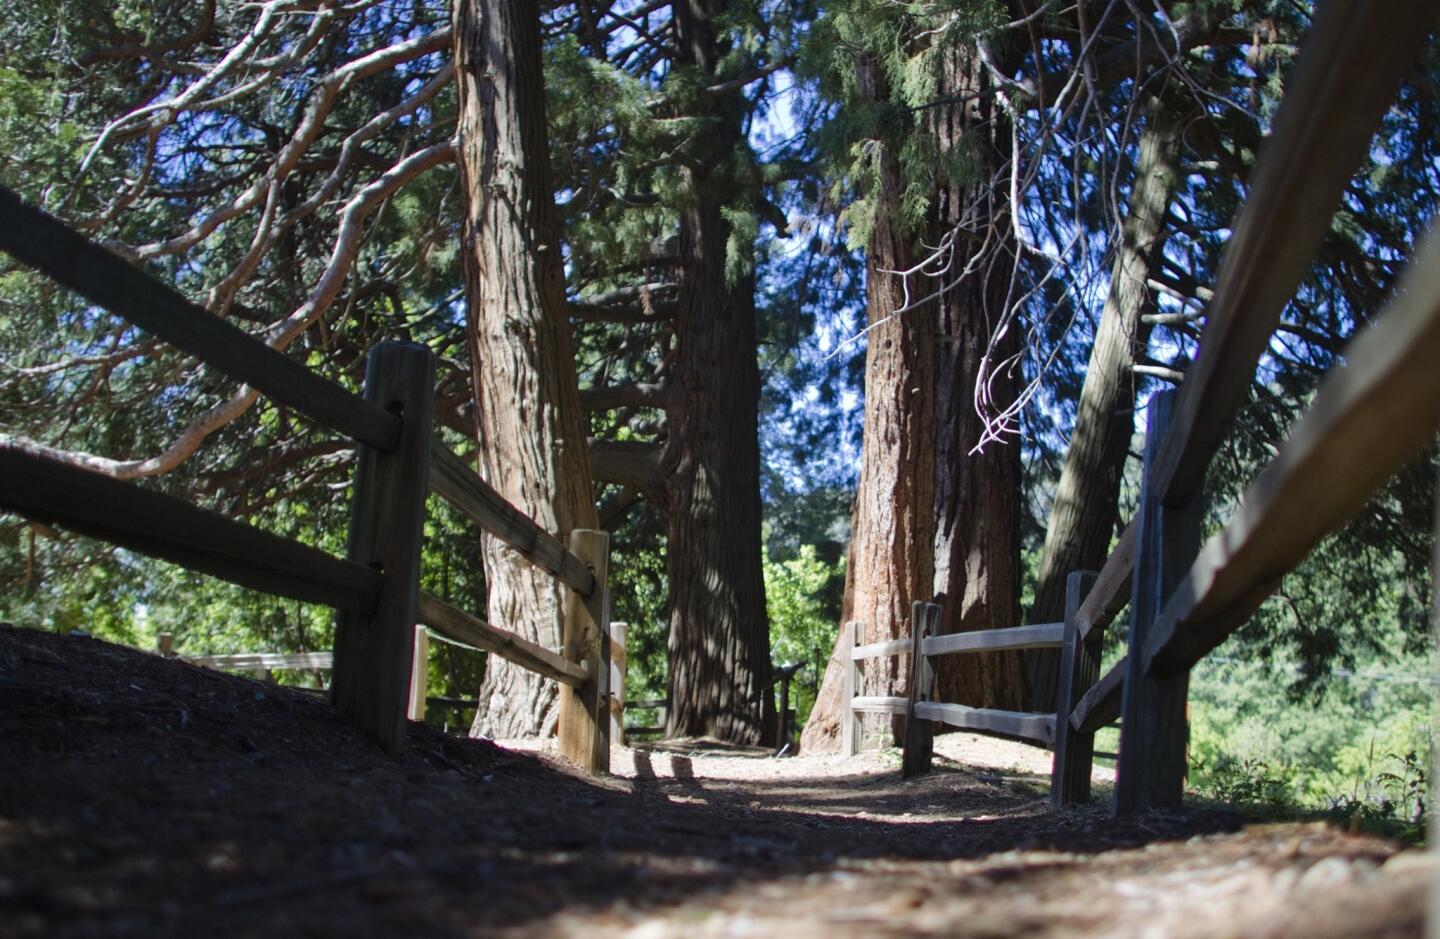 Giant sequoias